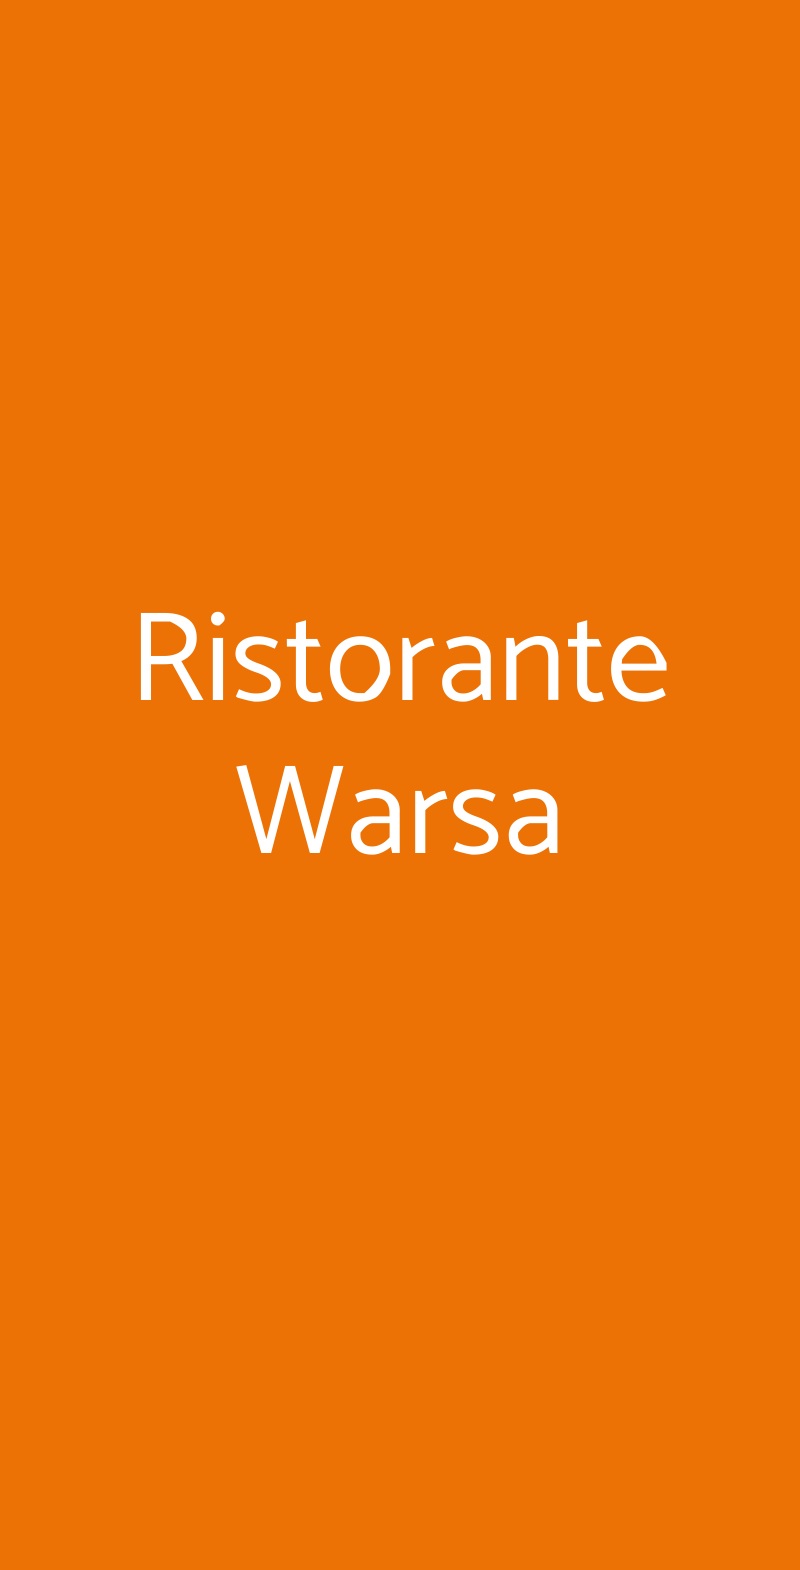 Ristorante Warsa Milano menù 1 pagina